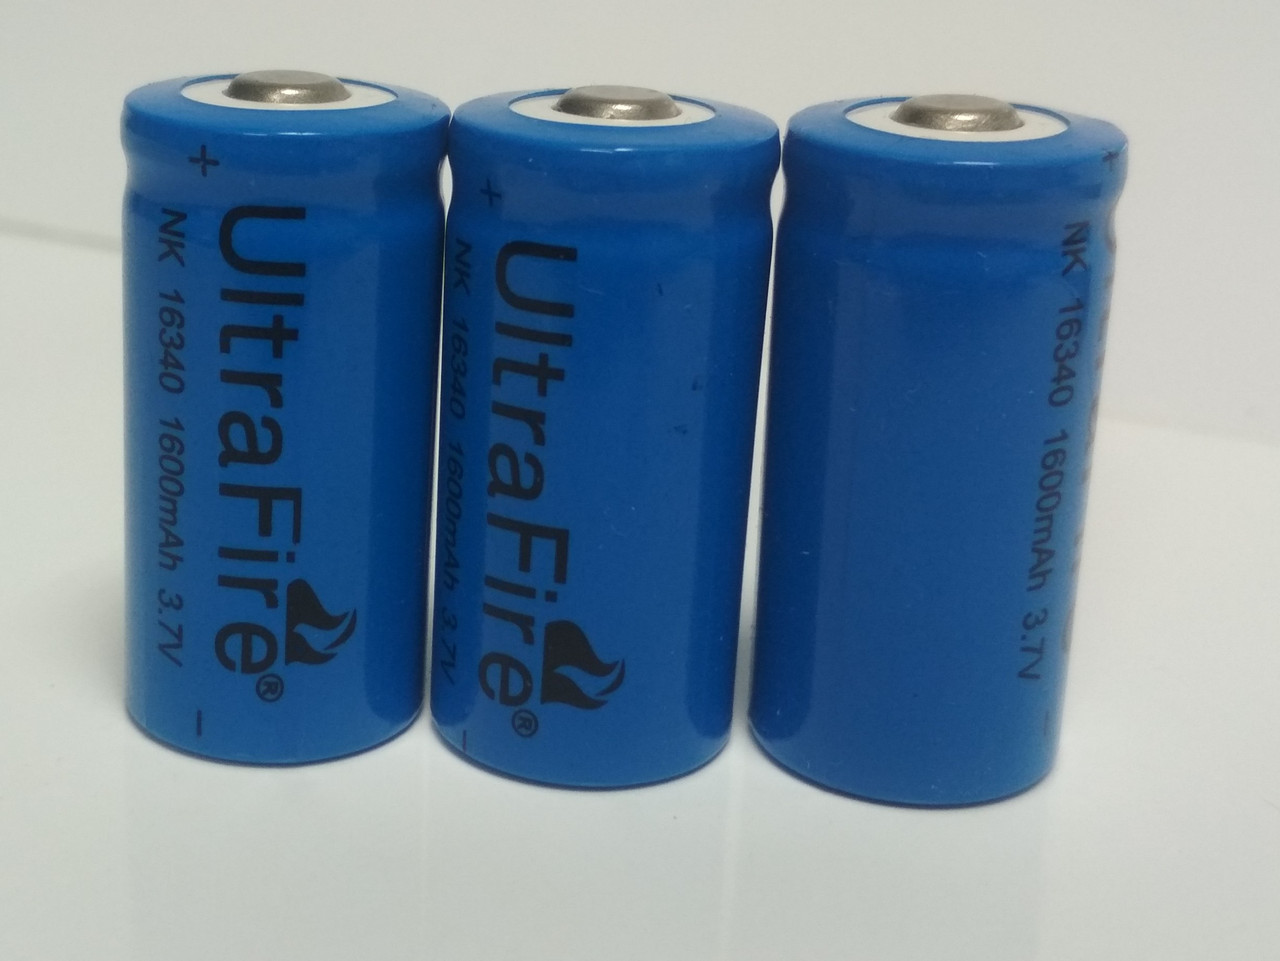 Аккумулятор Ultrafire 16340 (CR123A) 3.7 V 1600 mAh Li-ion (3 шт/упаковка)